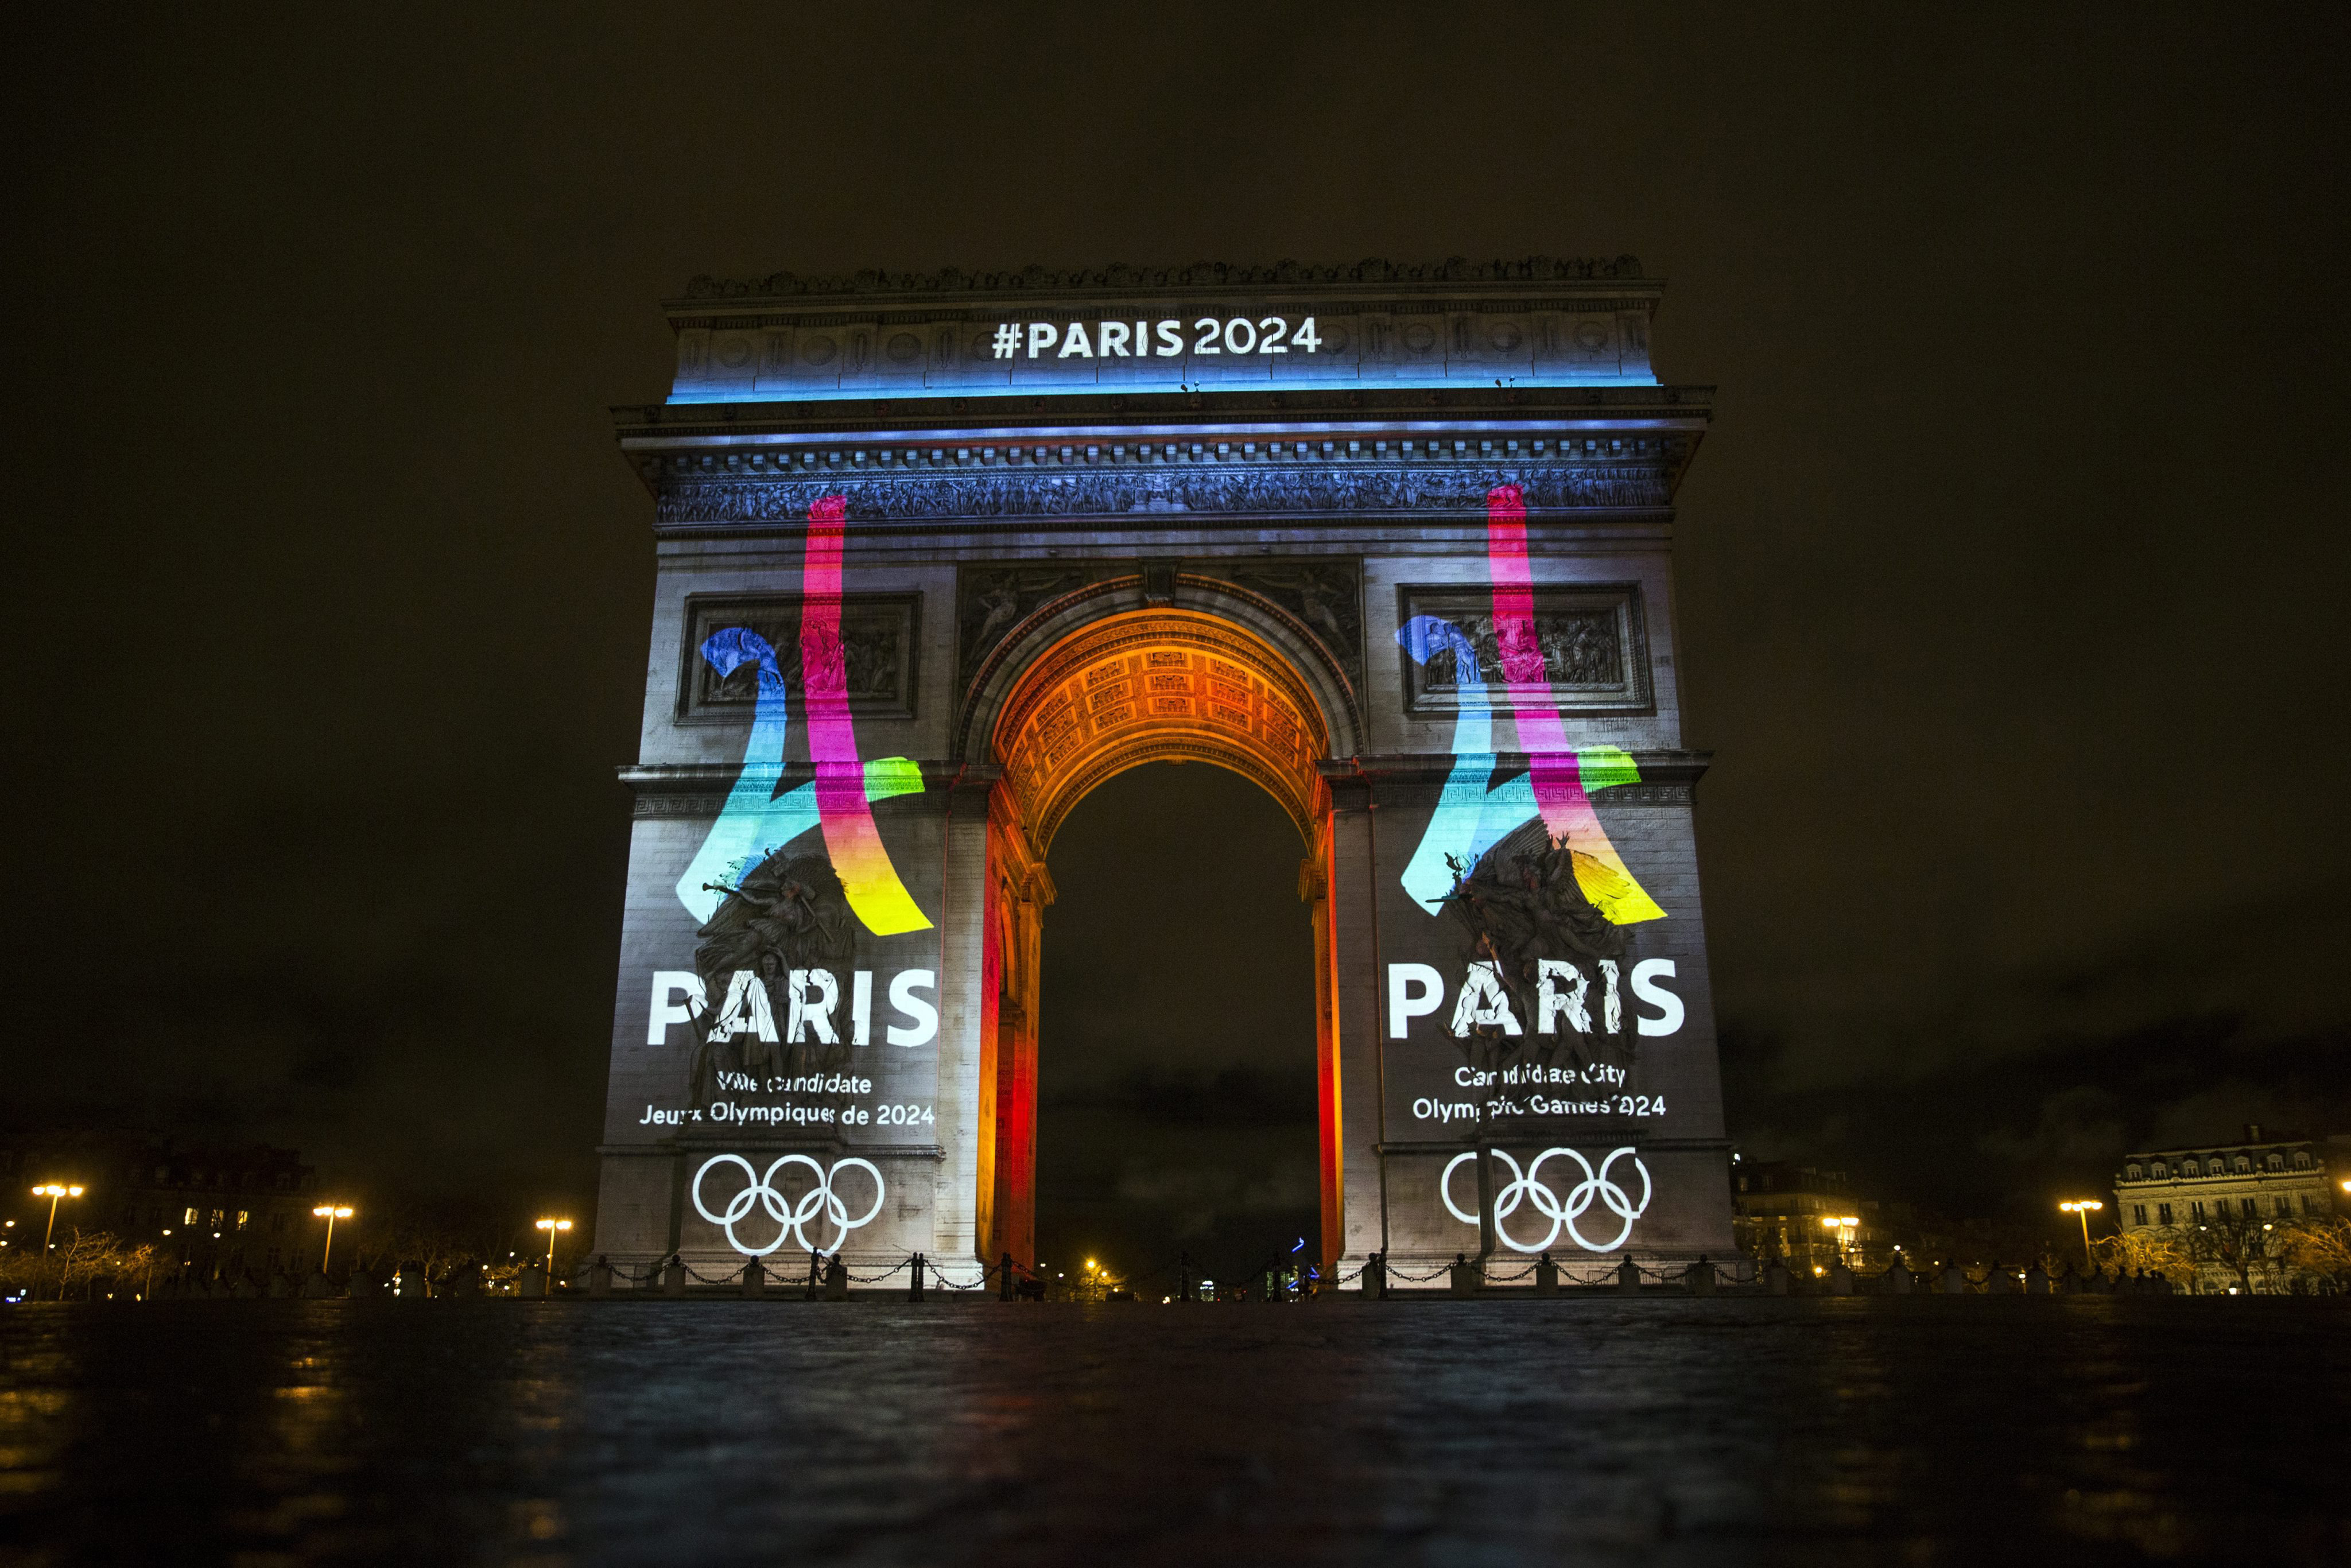 Las instalaciones permanentes que deberá afrontar la comisión que organiza las olimpiadas París 2024 es la Villa Olímpica y el centro acuático.